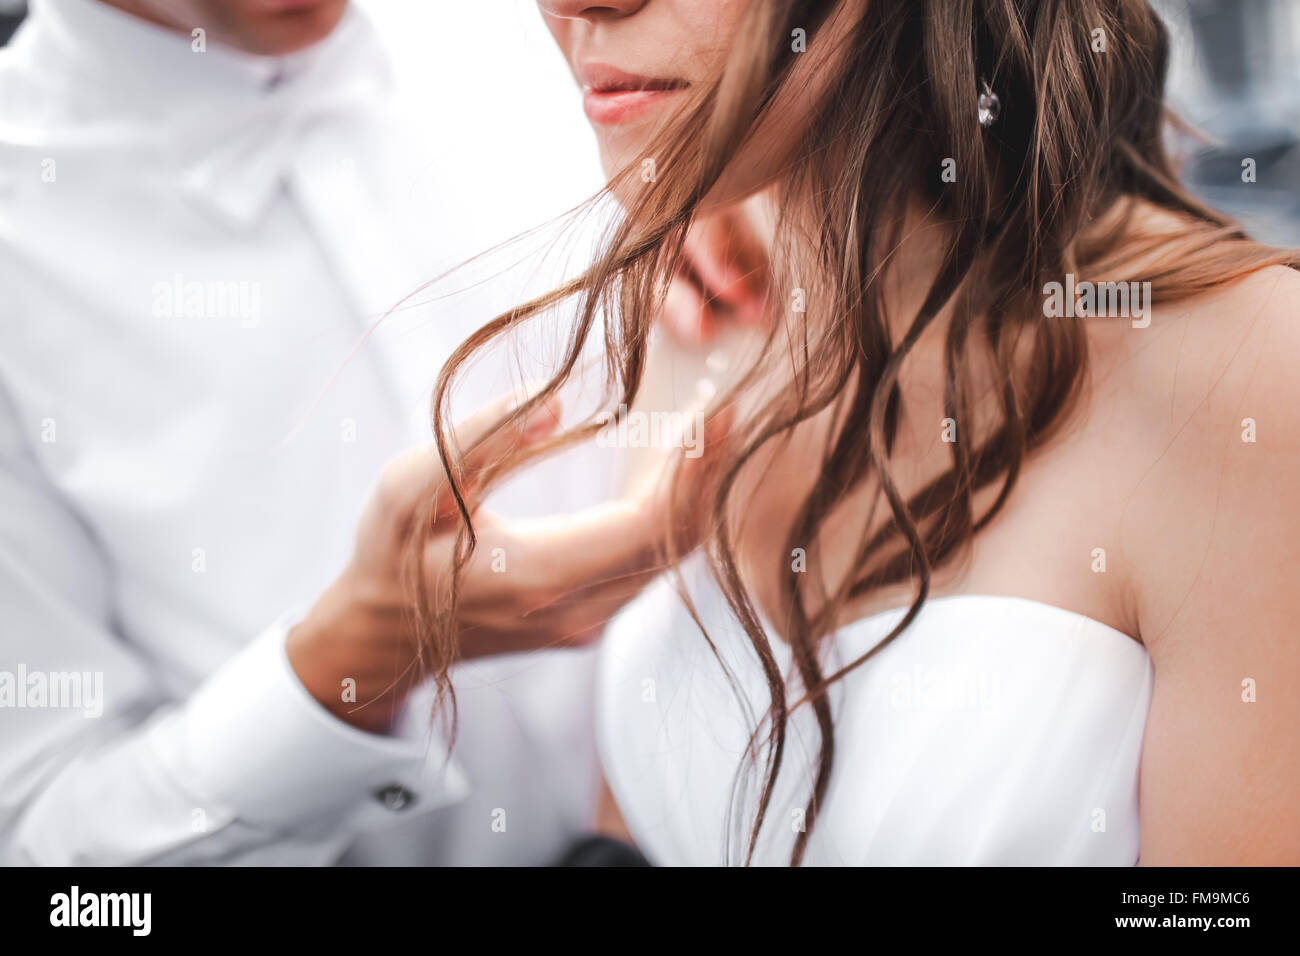 Der Bräutigam berührt sanft an die Braut, Nahaufnahme des fließenden Haaren. Stockfoto